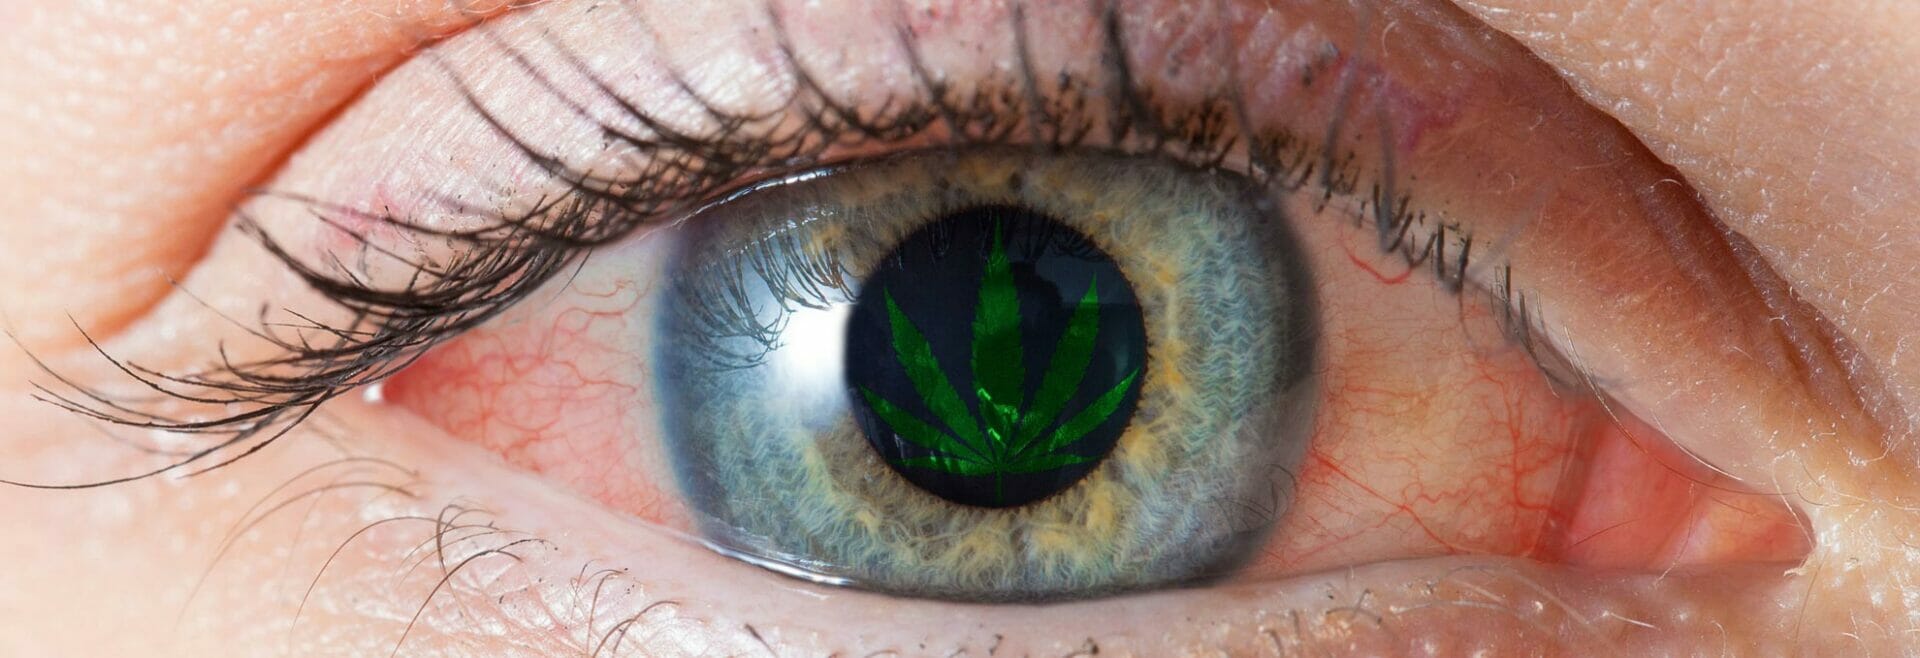 Das Phänomen der roten Augen durch Cannabis: Warum und wie man es vermeidet